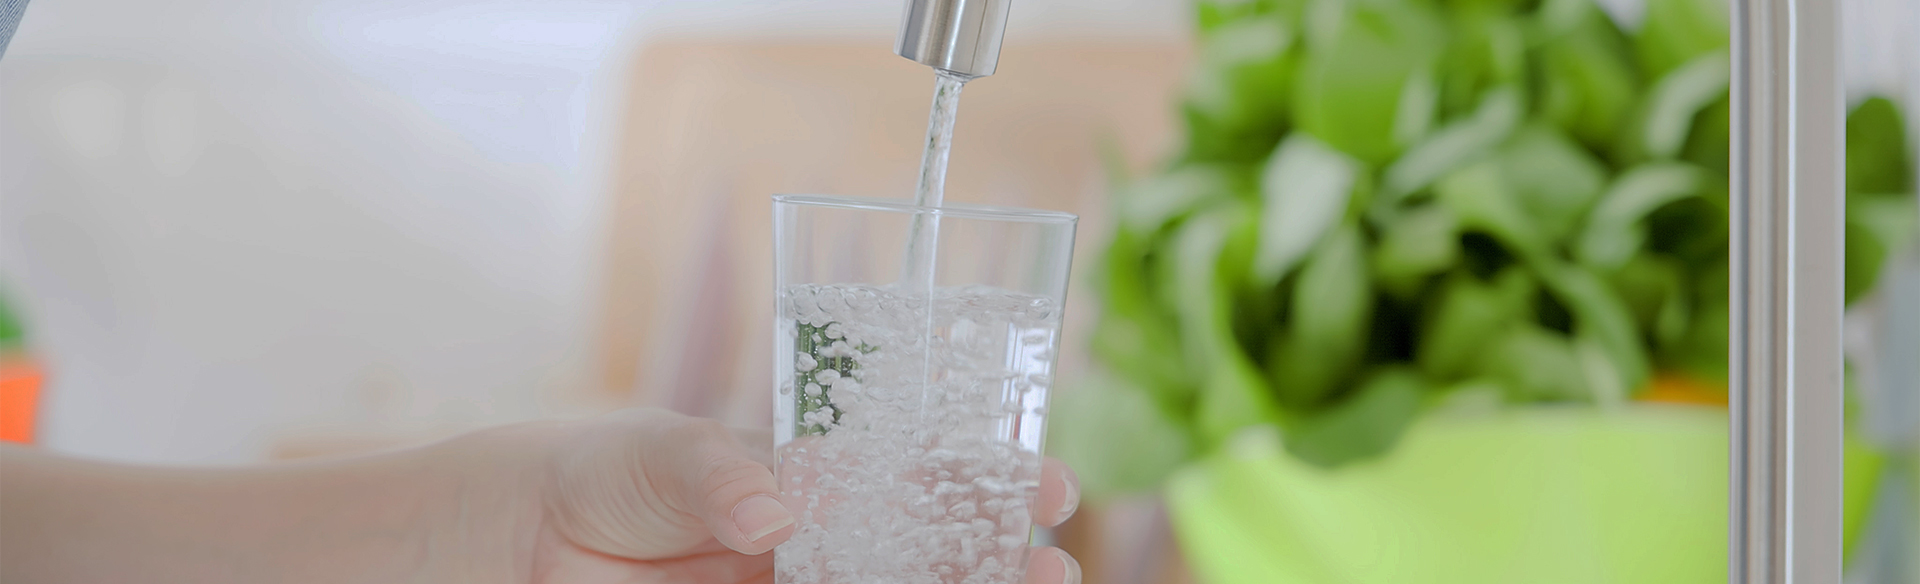 Trinkwasser – häufig gestellte Fragen